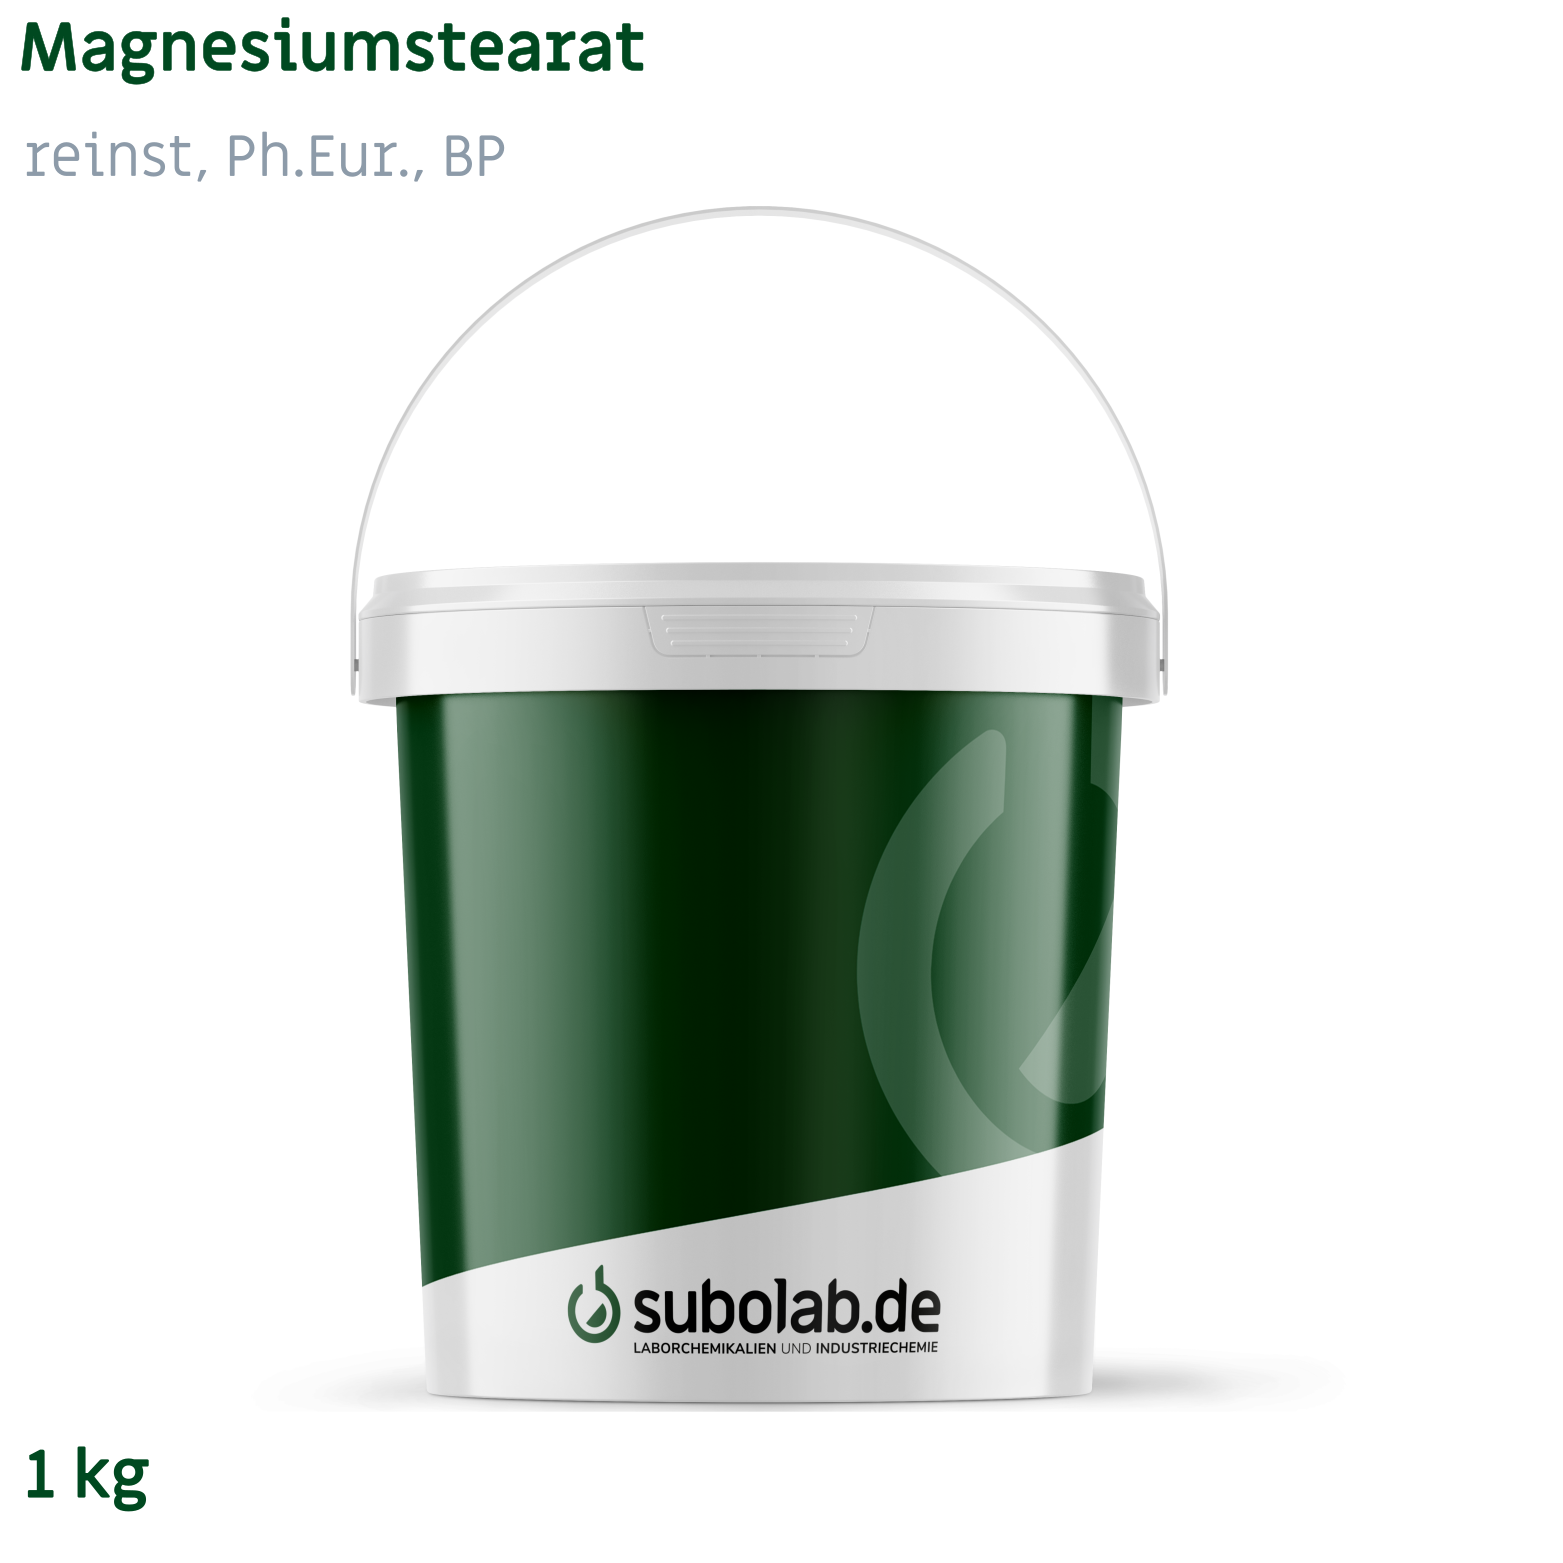 Bild von Magnesiumstearat reinst, Ph.Eur., BP (1 kg)